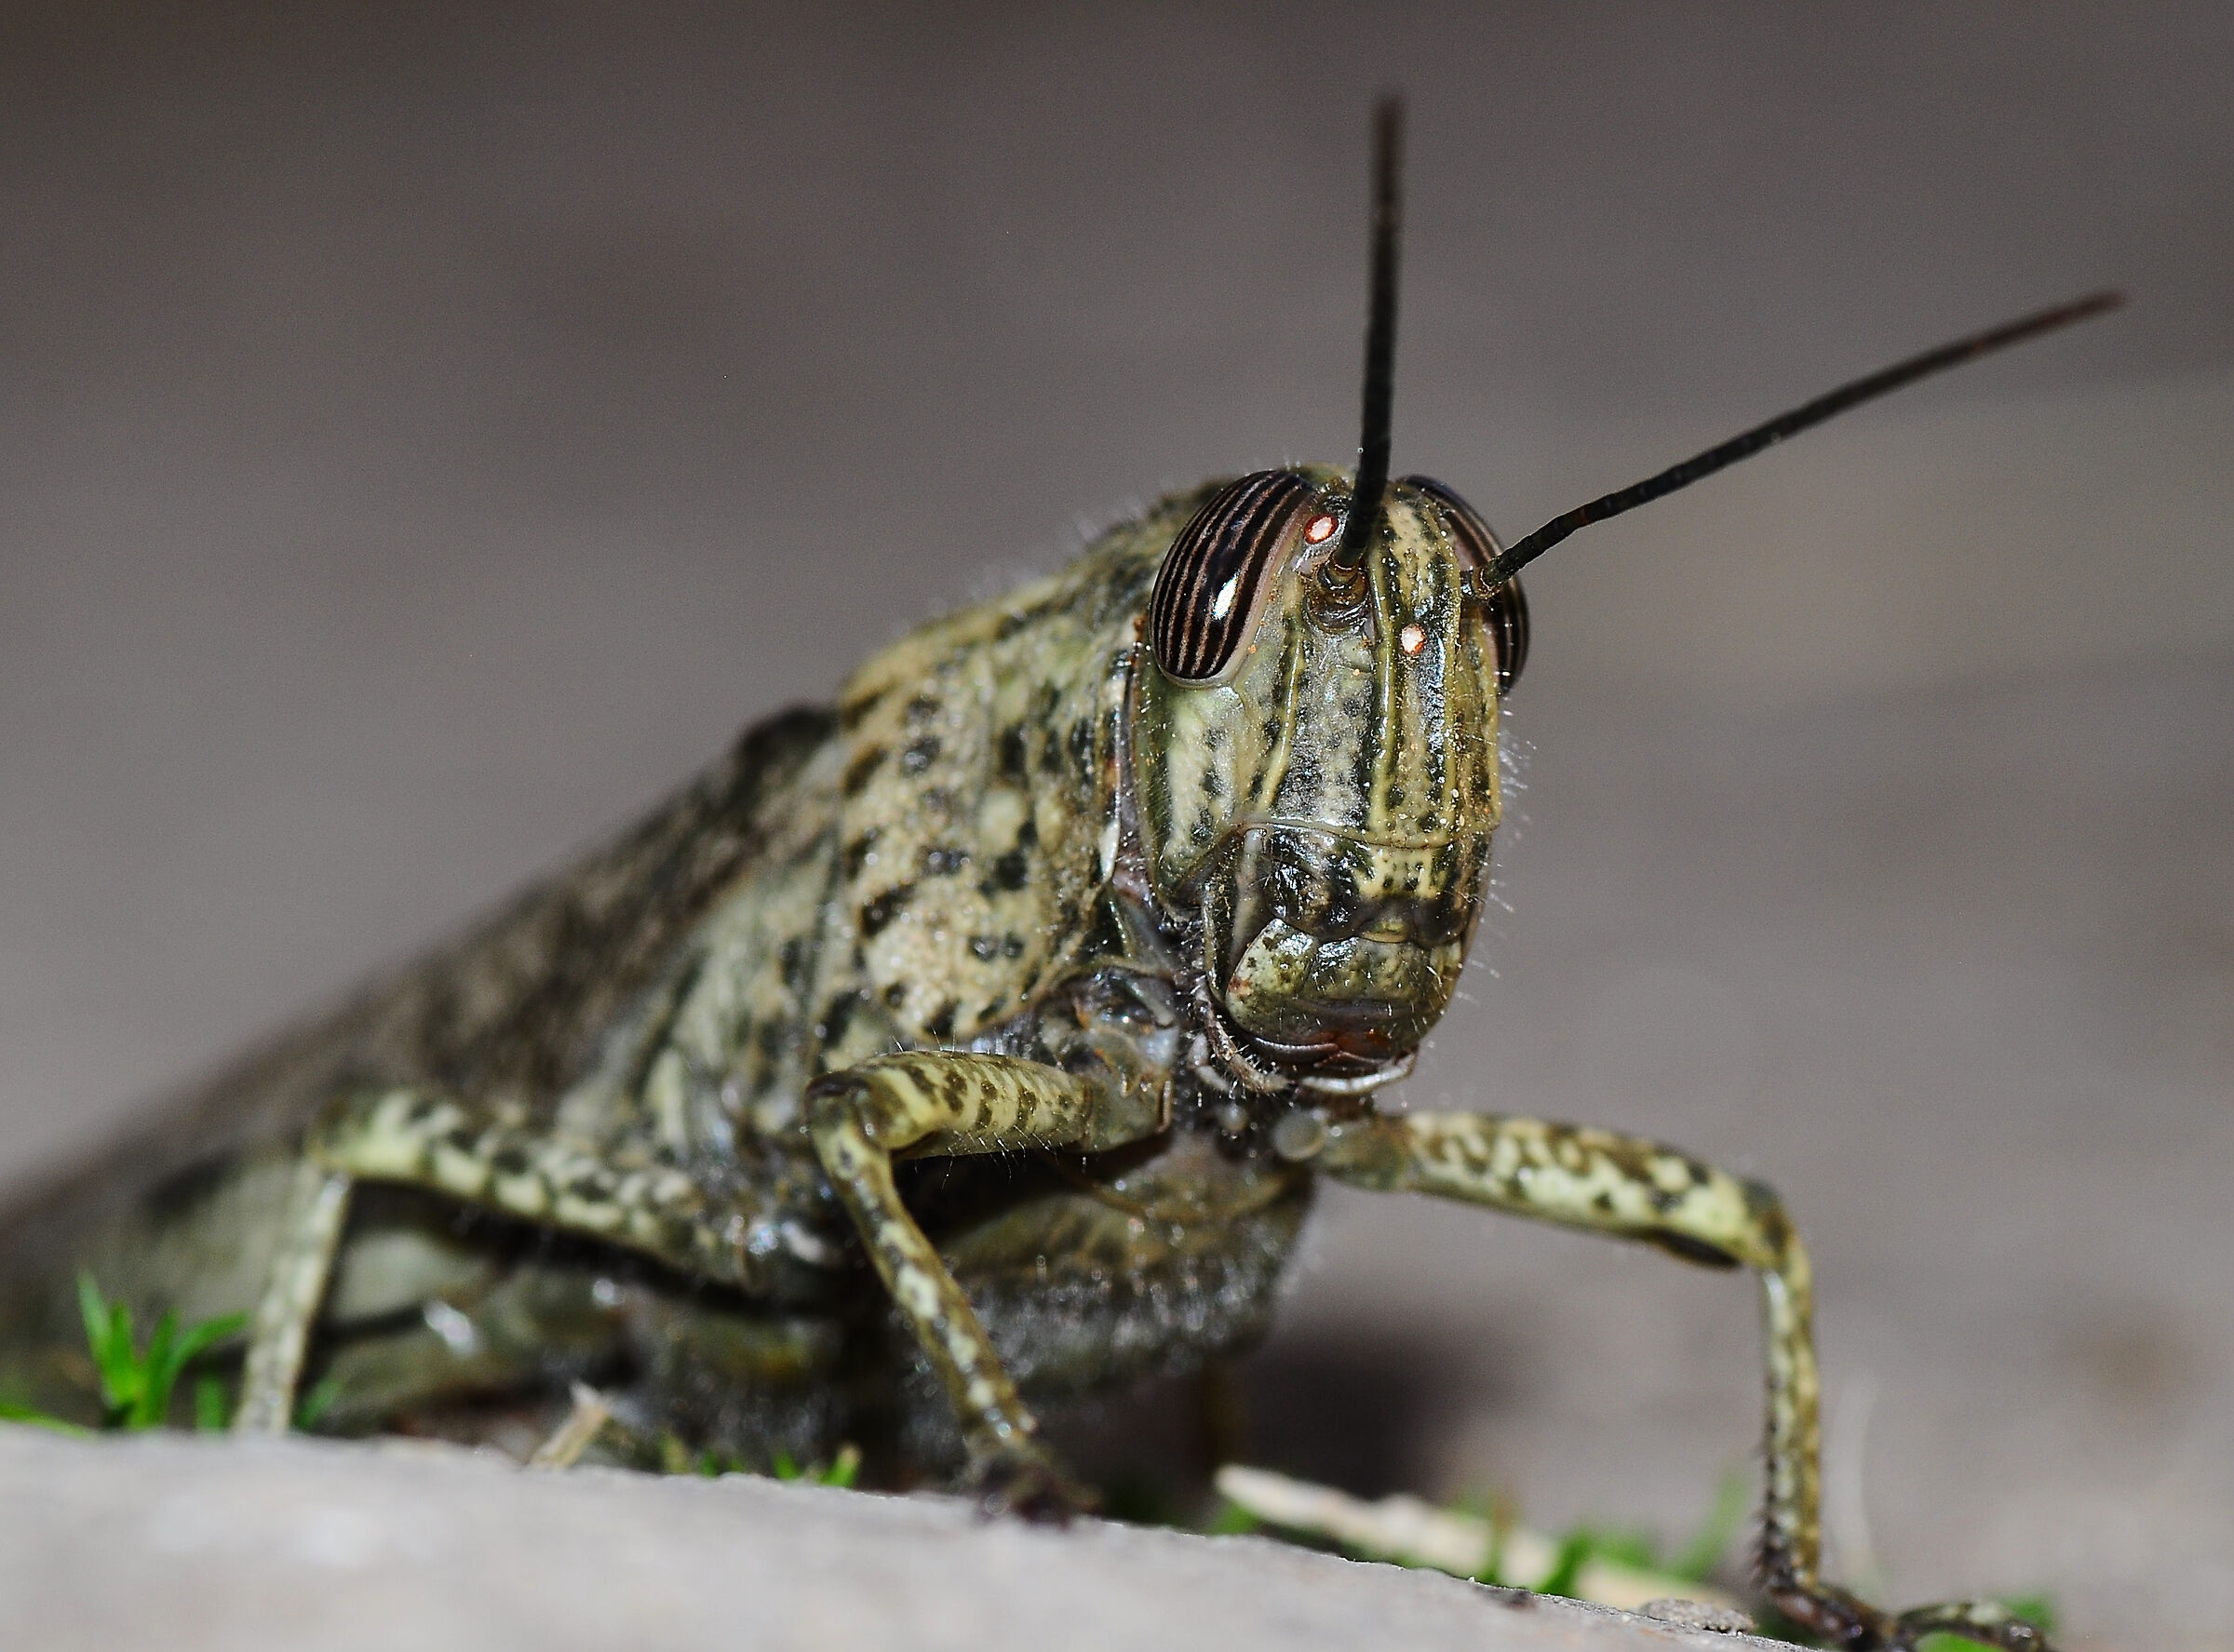 A beautiful grasshopper ...